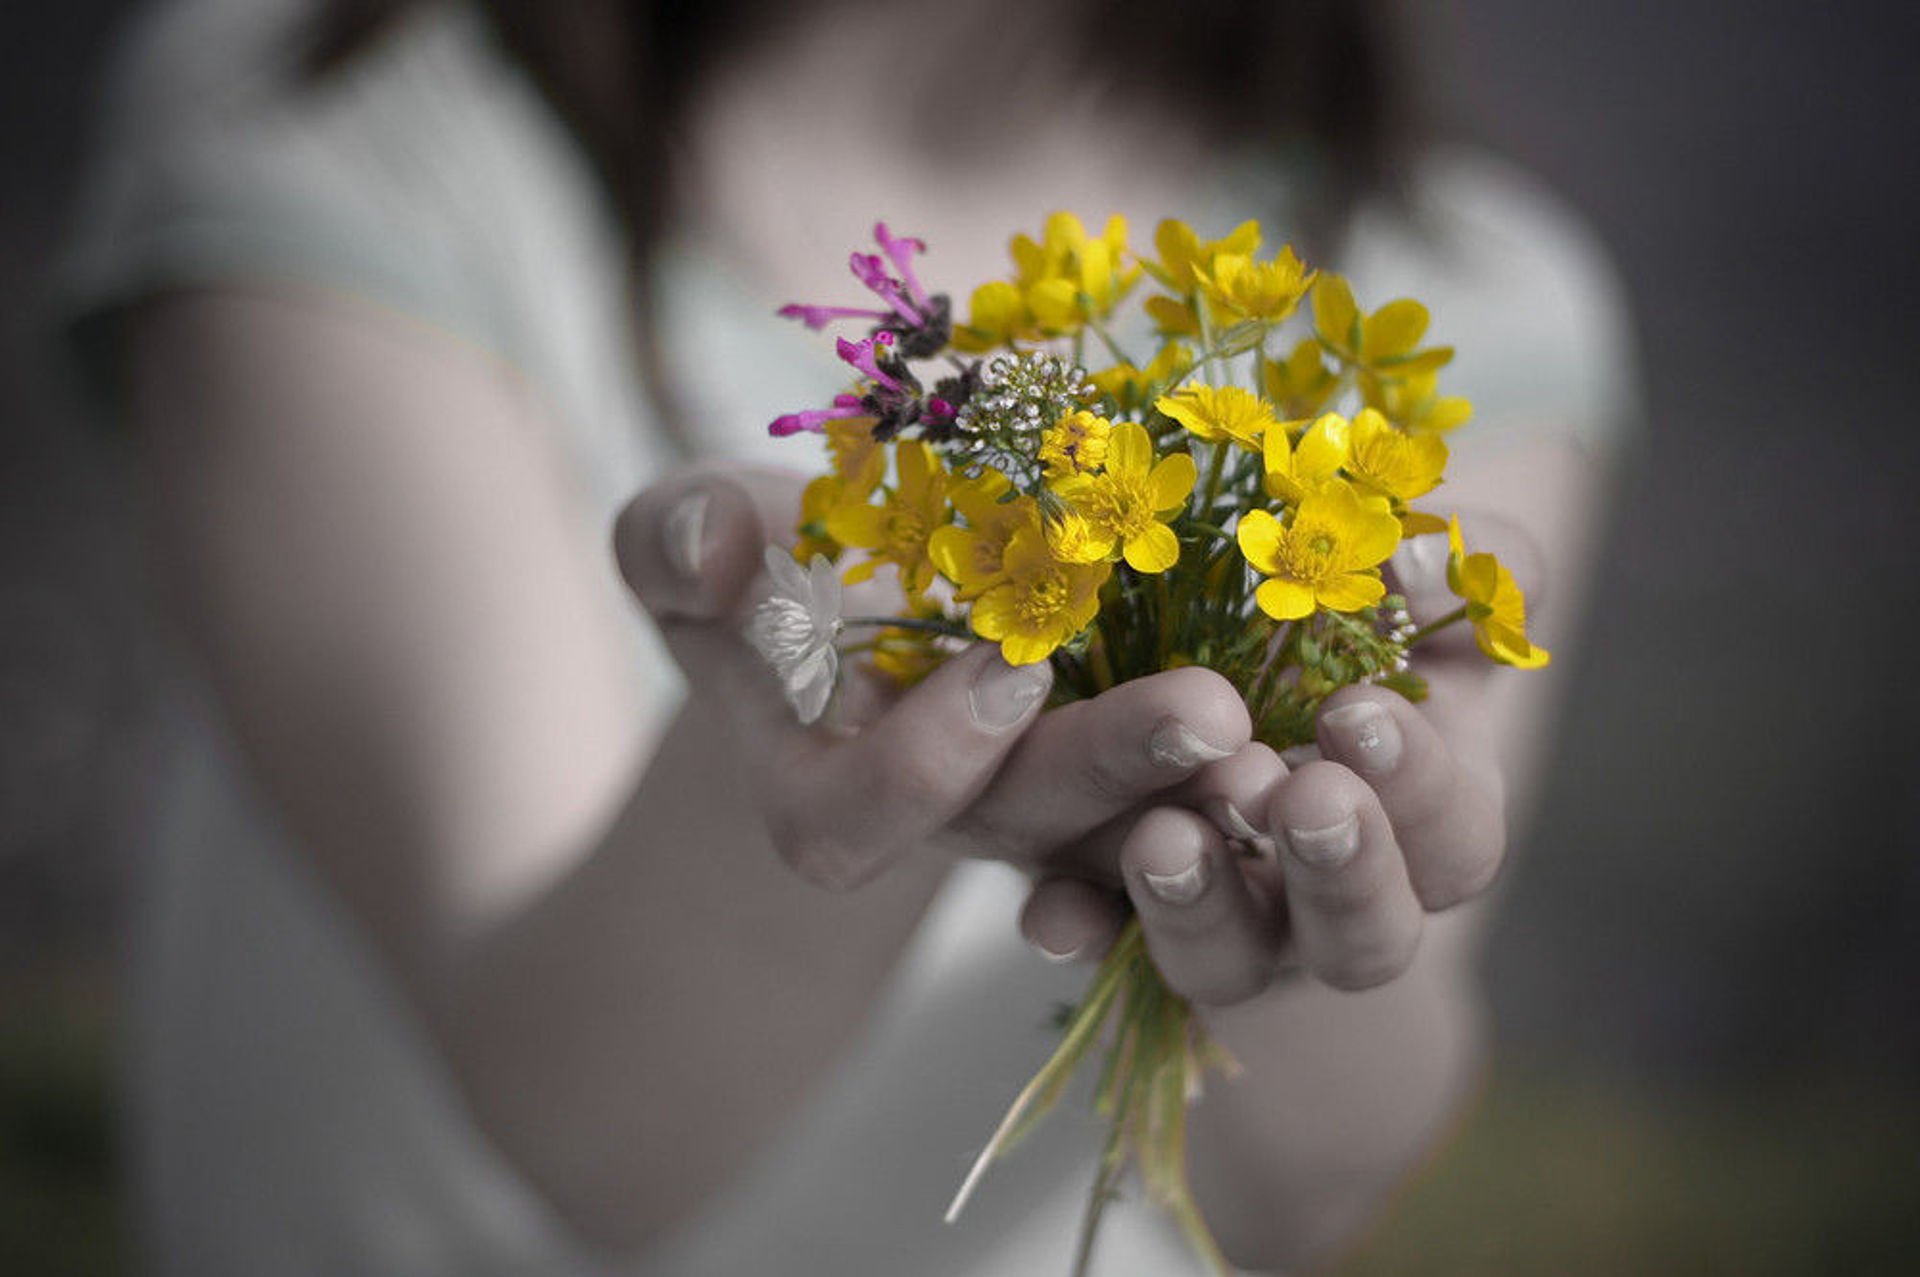 Хороший день делают хорошие люди. Цветы в ладонях. Цветы радости. Цветы радости жизни. Счастье в руках.